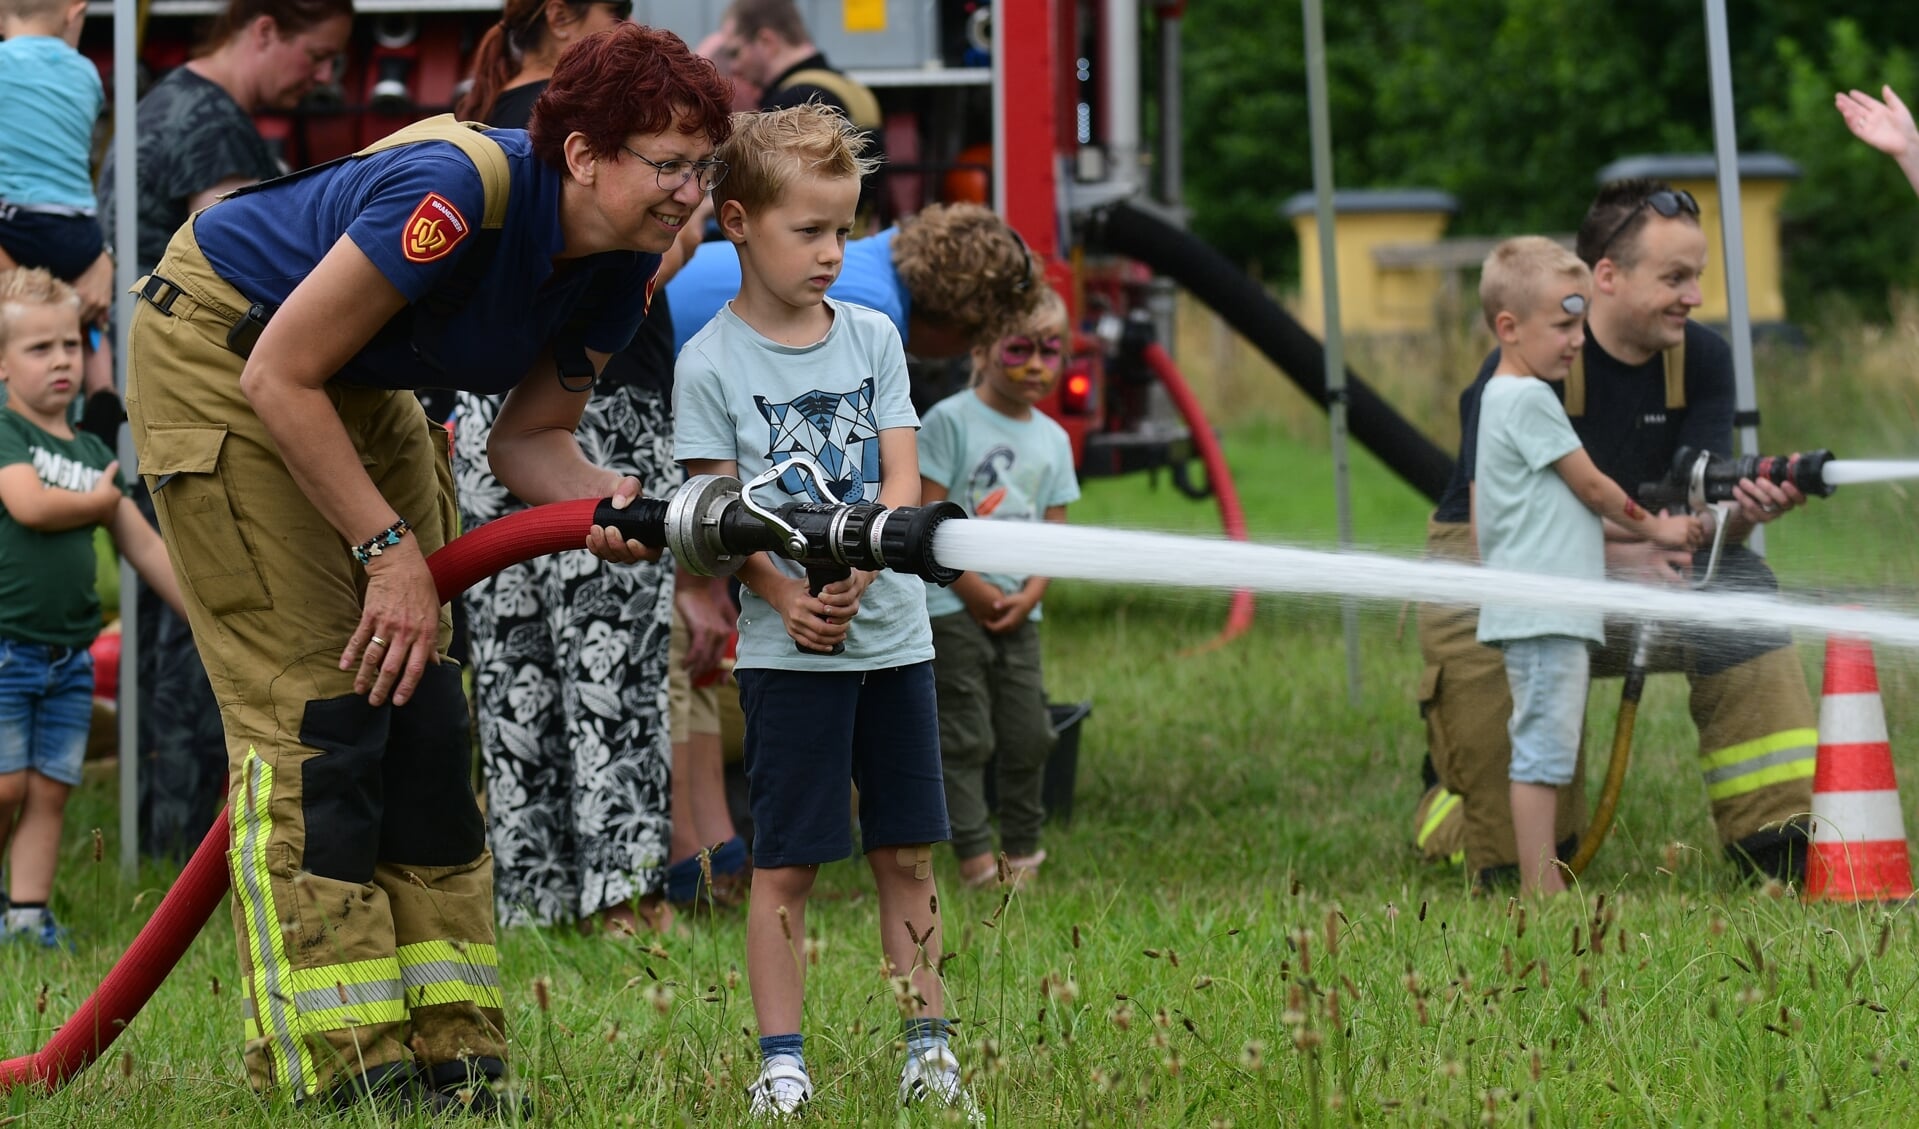 Onder leiding van de brandweer mochten kinderen met een echte brandweerslang spuiten. Foto: AchterhoekFoto.nl/Paul Harmelink